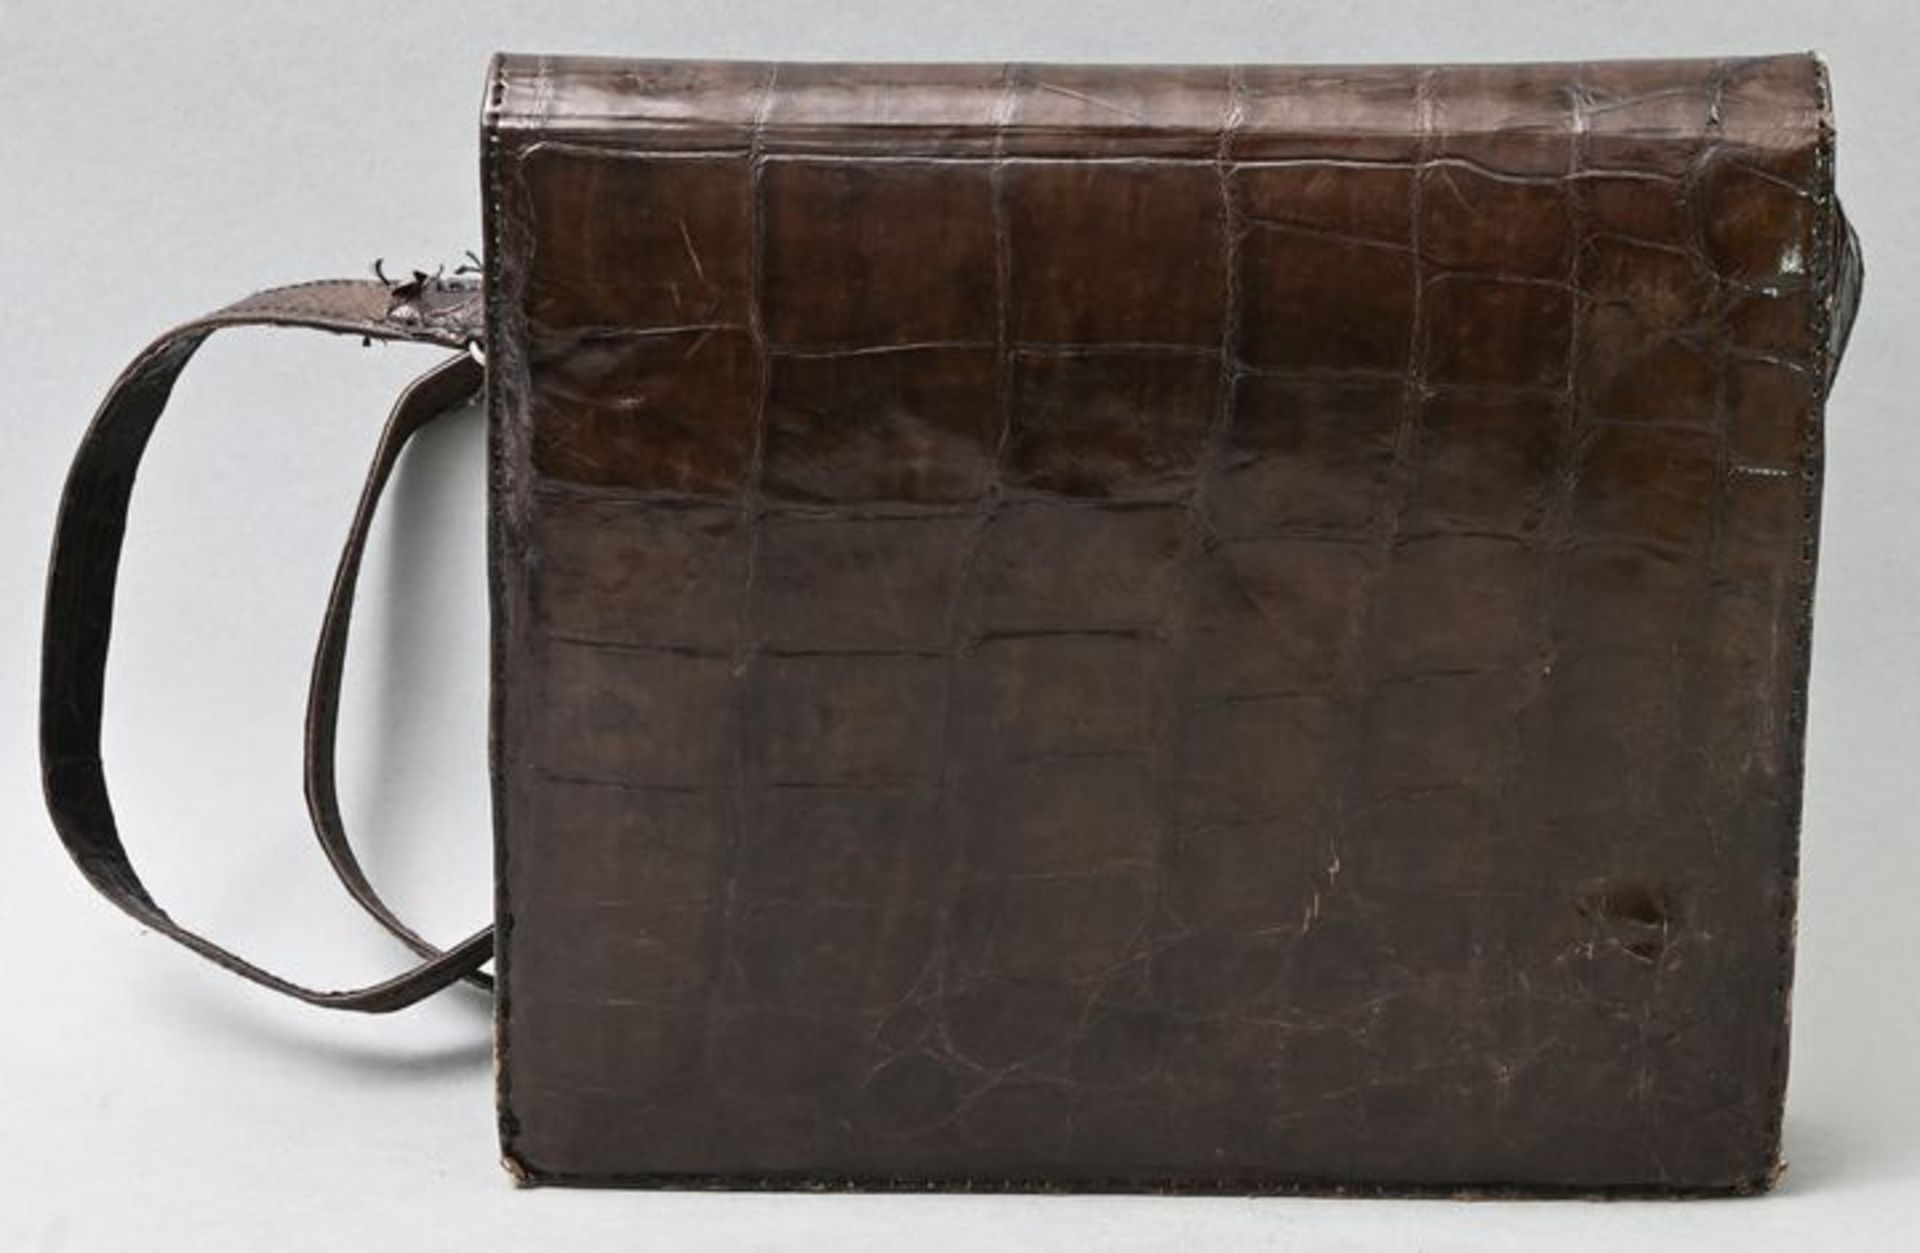 Damenhandtasche, dunkelbraunes Kroko / Handbag, darkbrown croco - Image 2 of 3